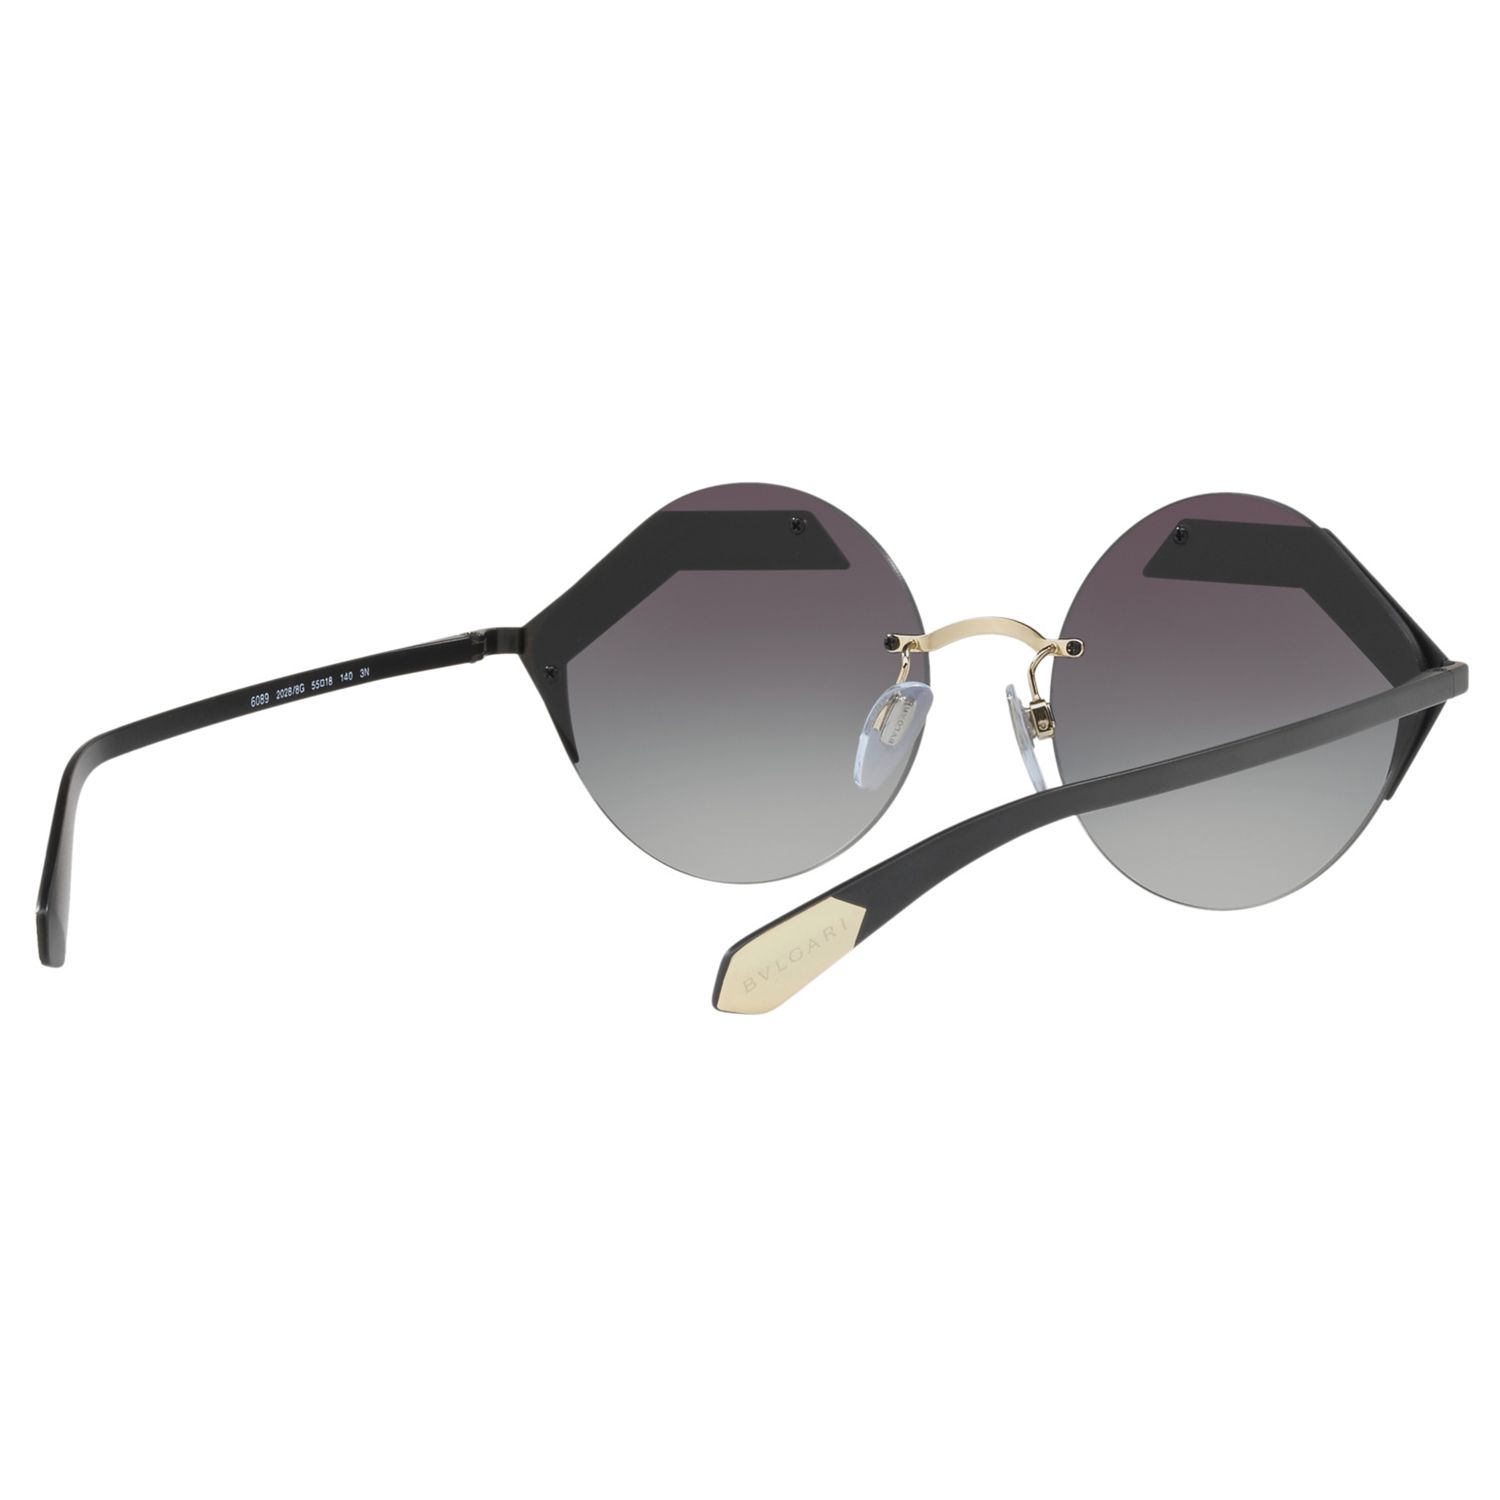 Buy BVLGARI BV6089 Round Sunglasses Online at johnlewis.com